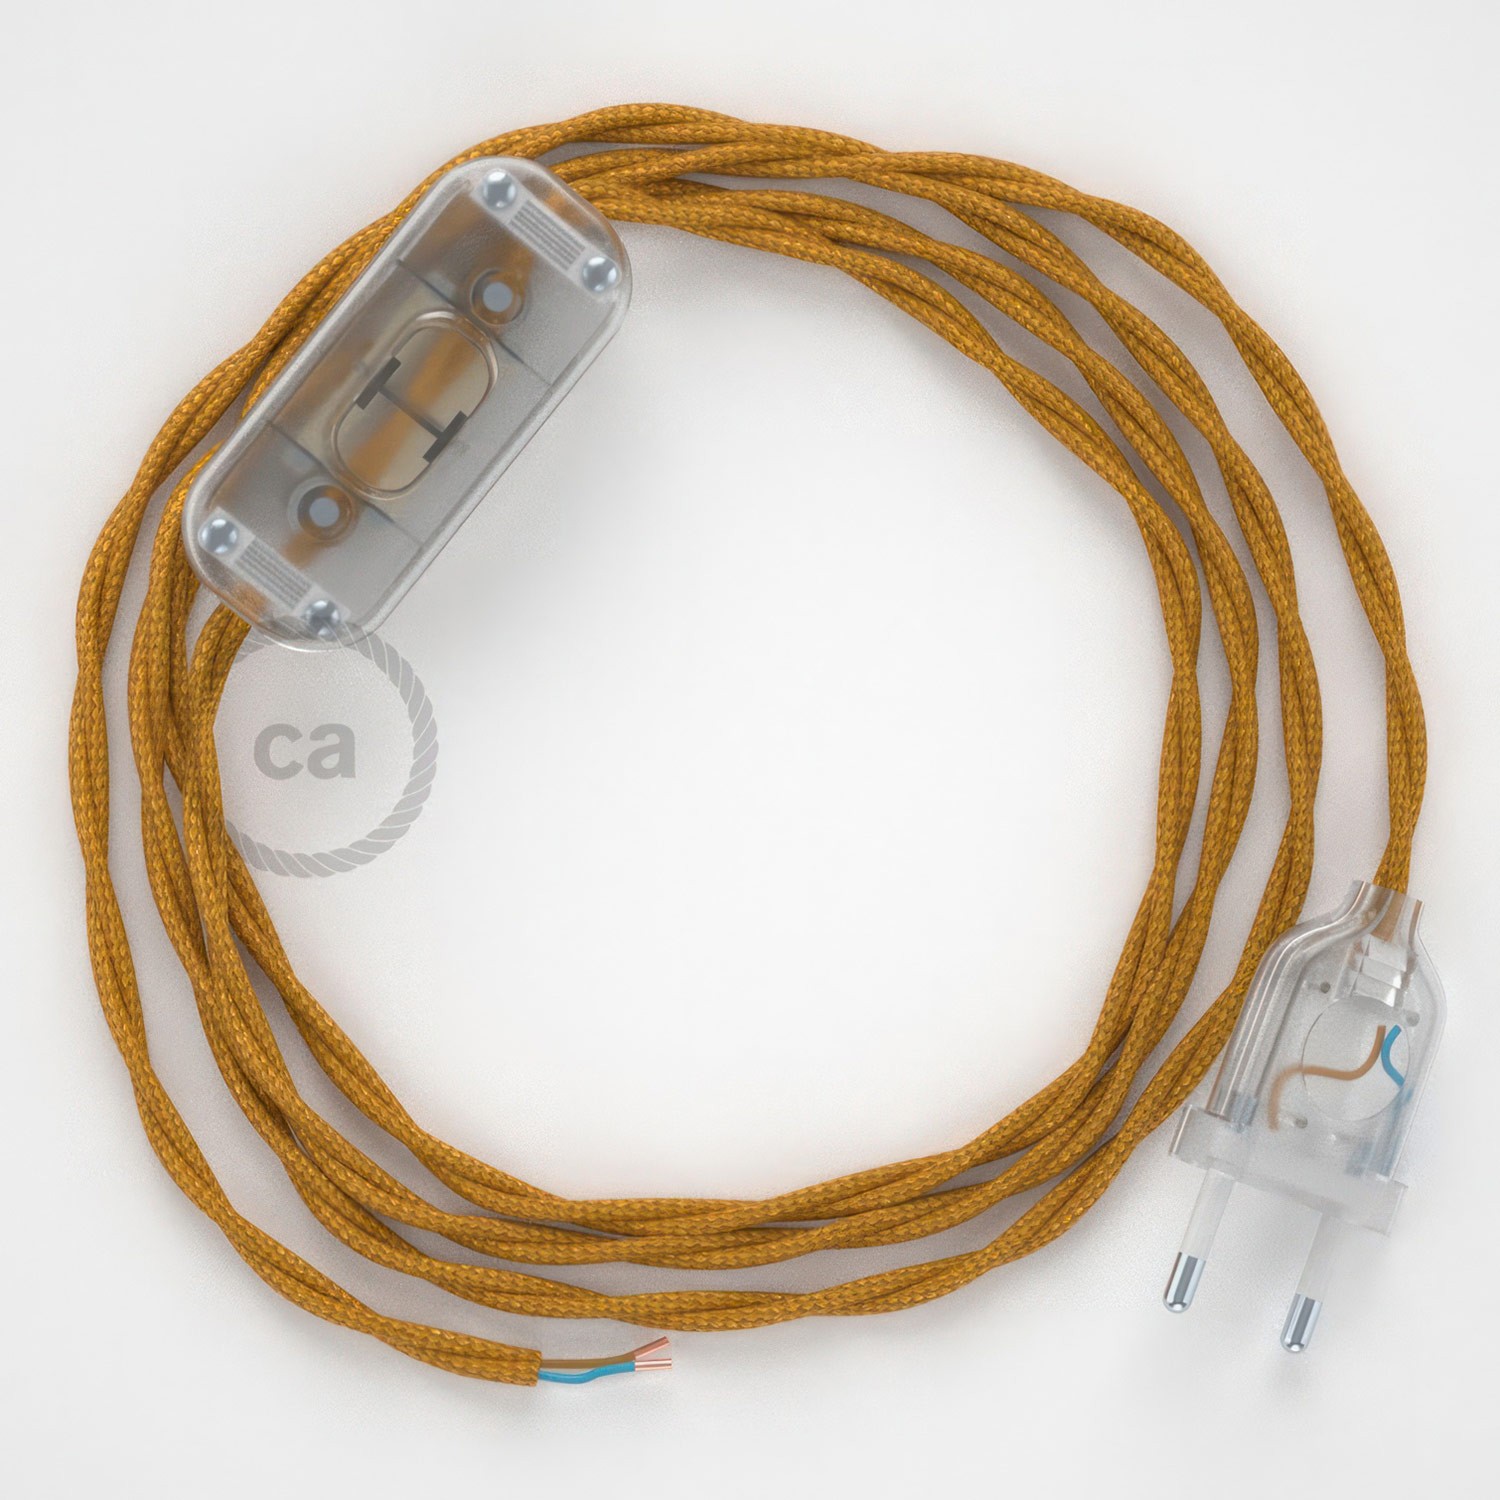 Cableado para lámpara, cable TM05 Efecto Seda Dorado 1,8m. Elige tu el color de la clavija y del interruptor!